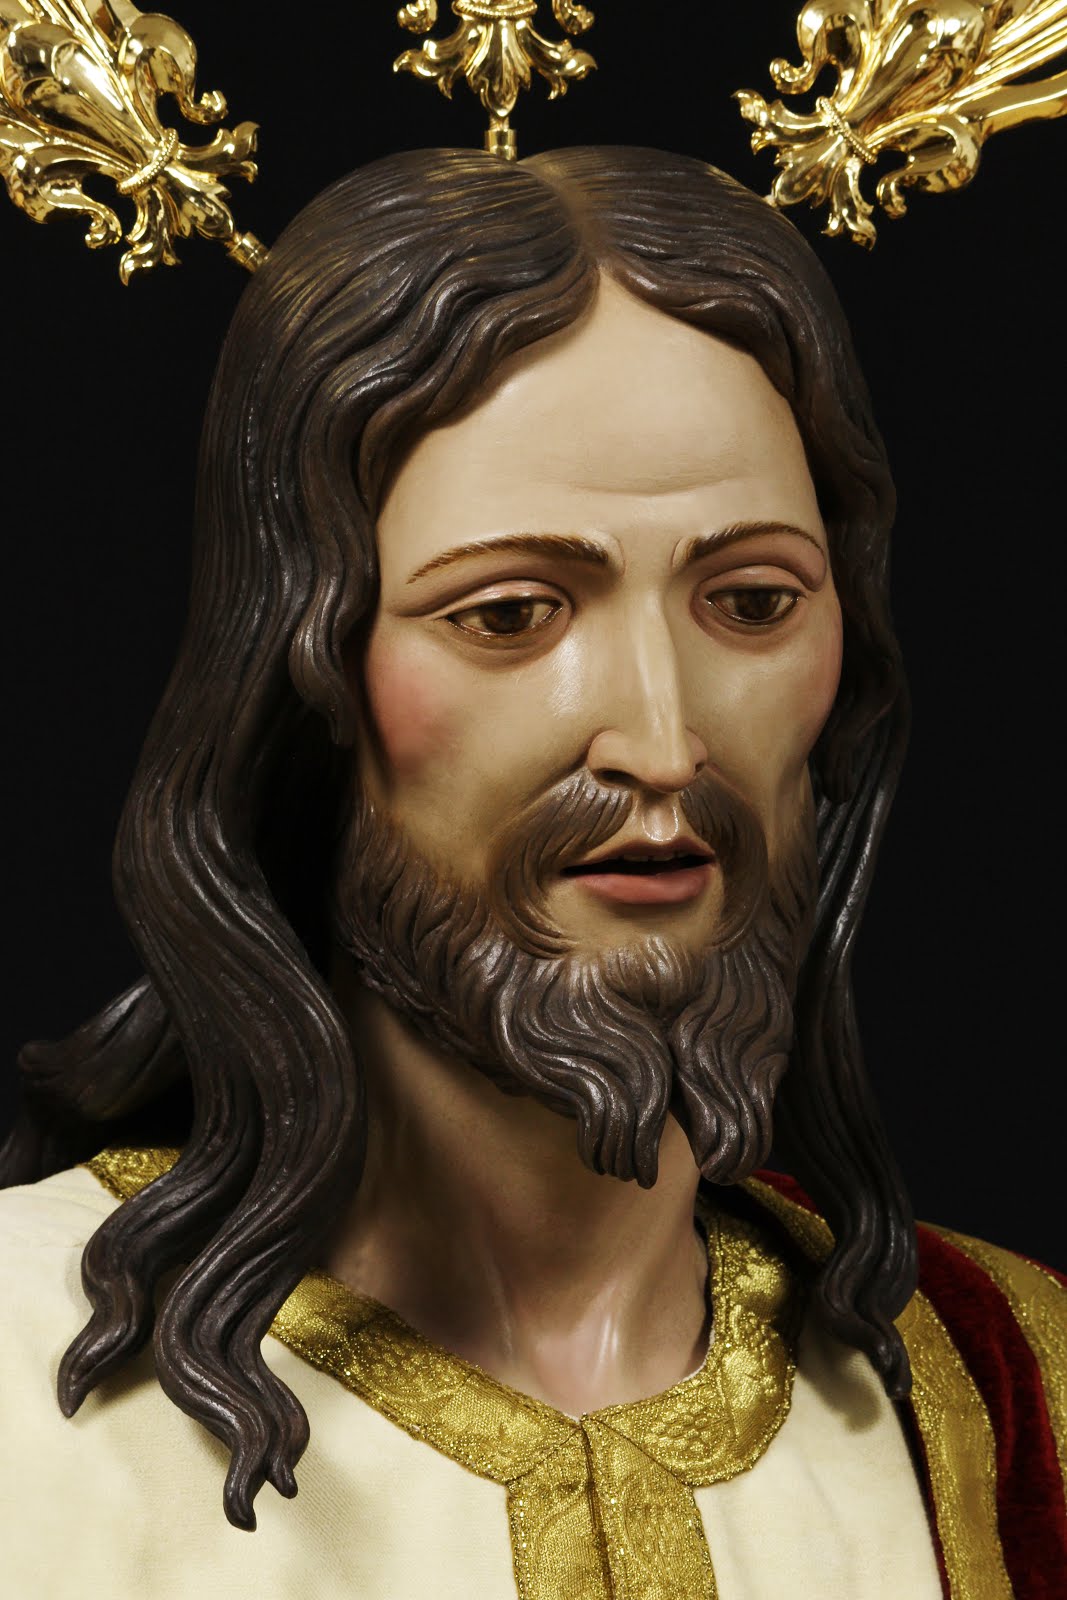 Ntro. Padre Jesús de la Paz, nominado a la mejor obra del XI premio "La Hornacina".